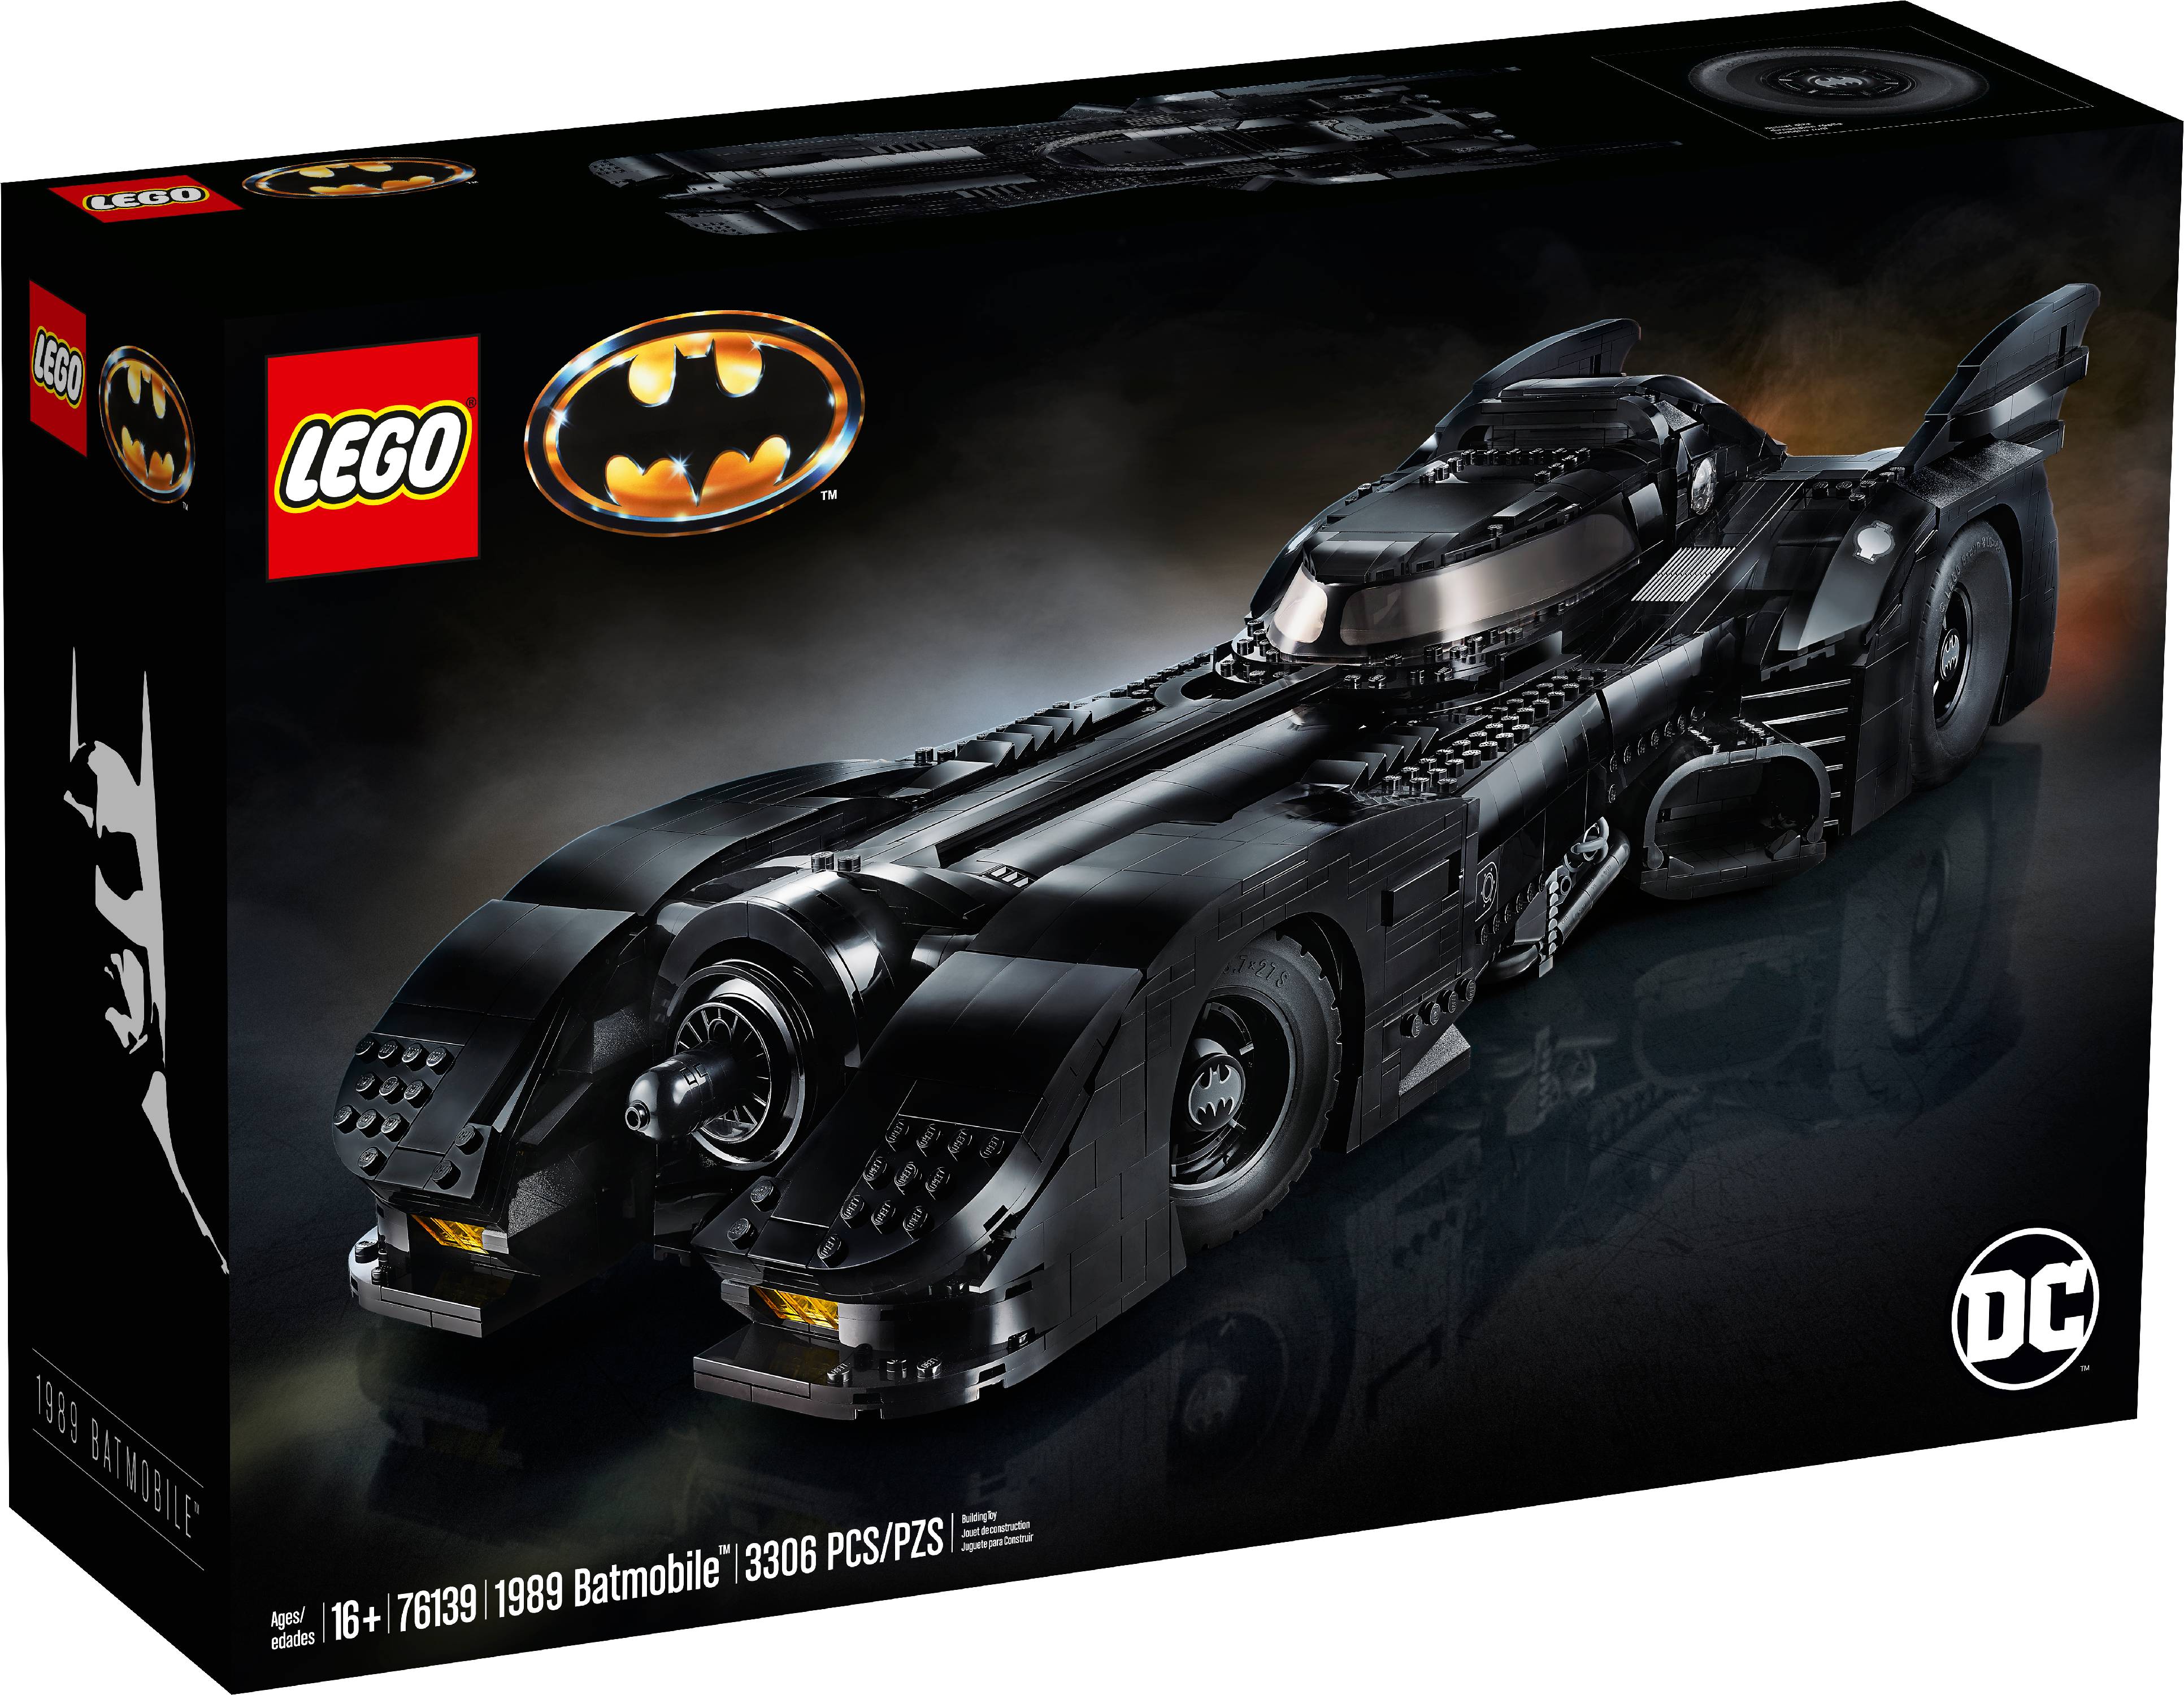 LEGO 76139 DC Batman 1989 Batmobile Building Kit (3,306 Piece) - image 5 of 7